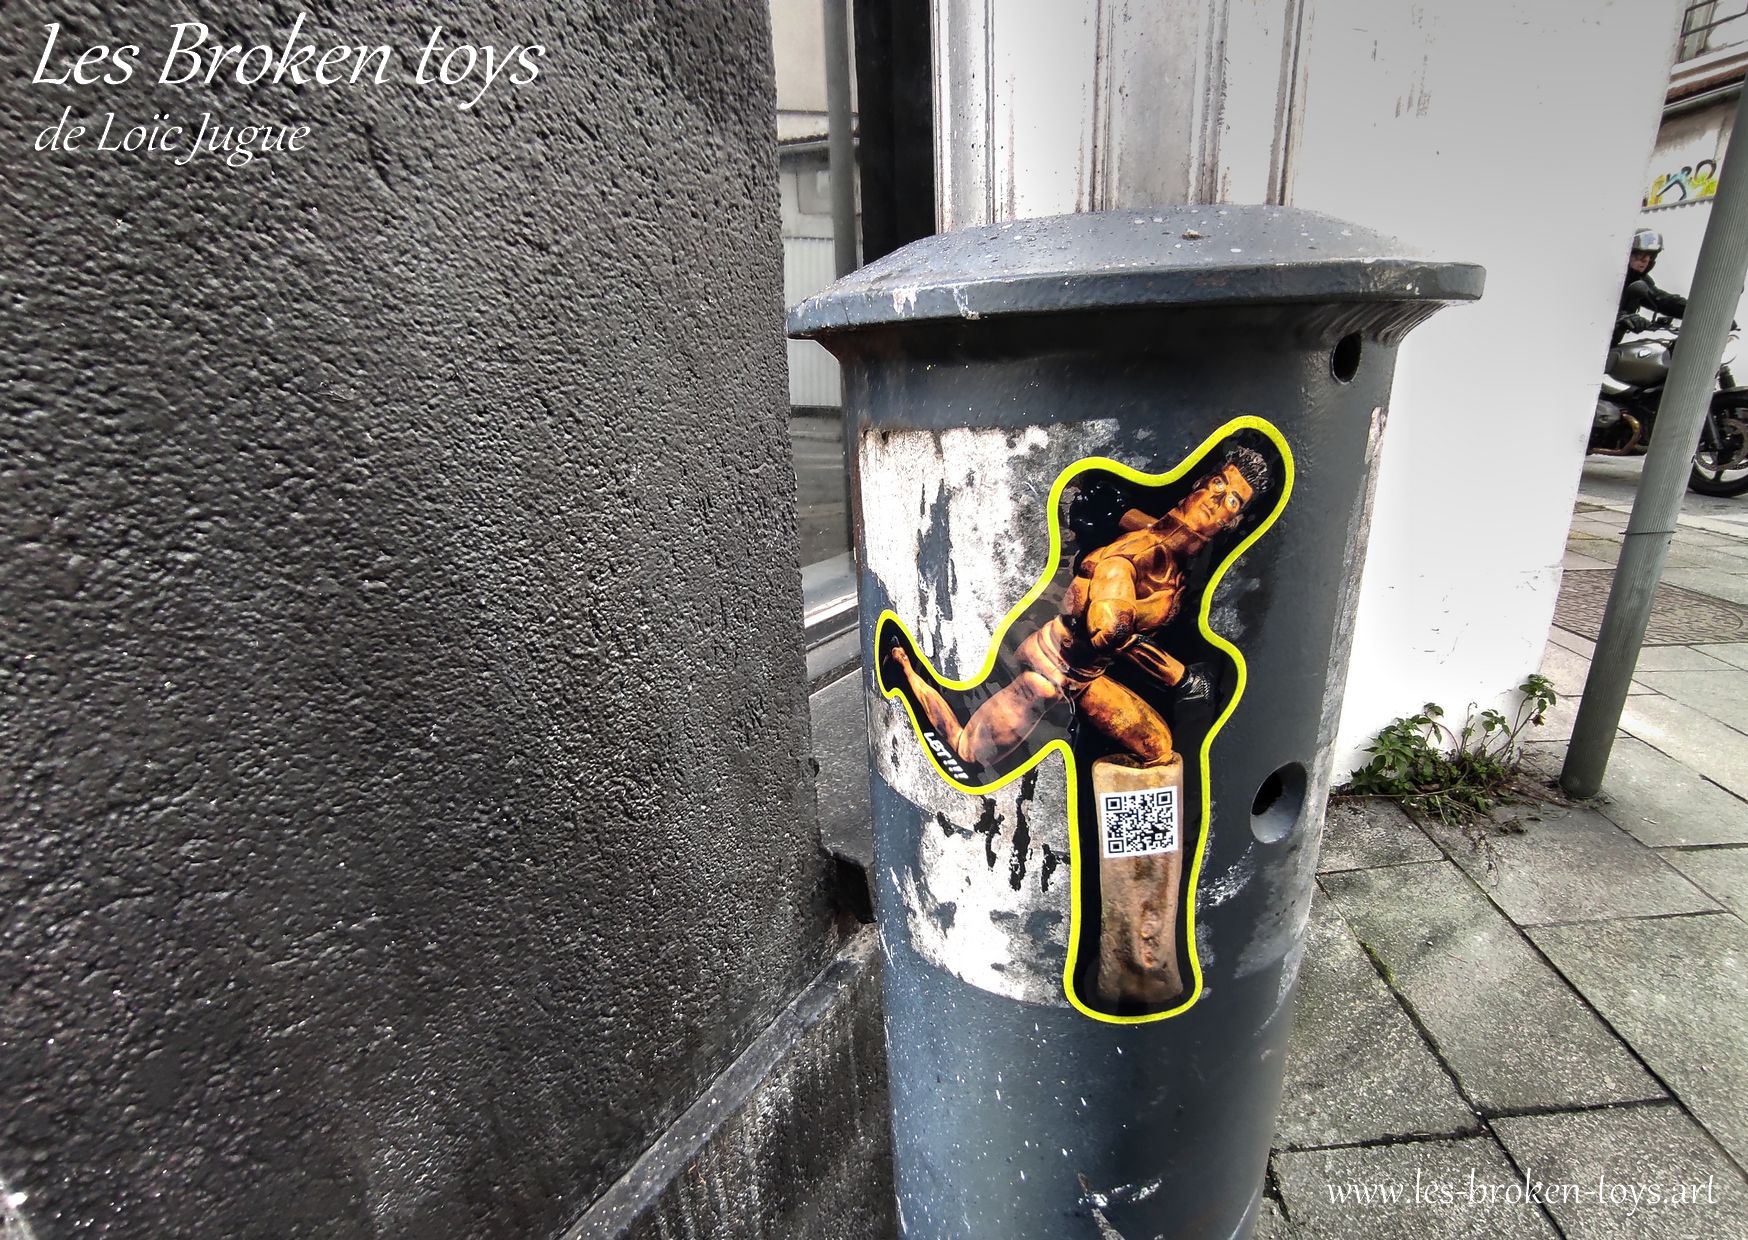 Street art sticker Les Broken Toys